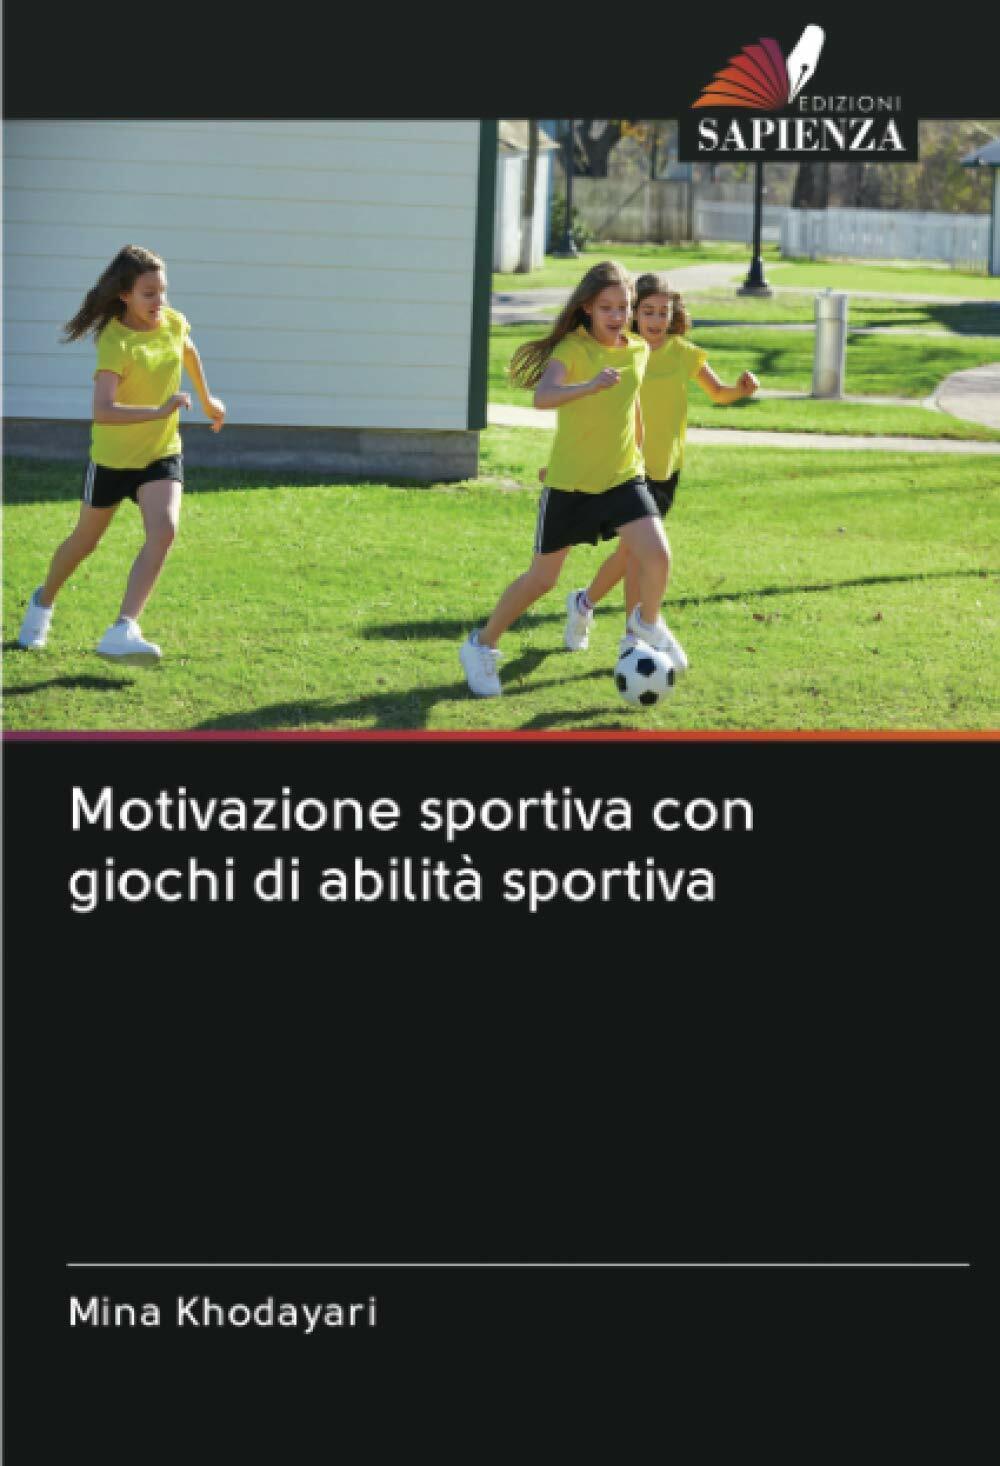 Motivazione sportiva con giochi di abilit? sportiva - Mina Khodayari - 2020